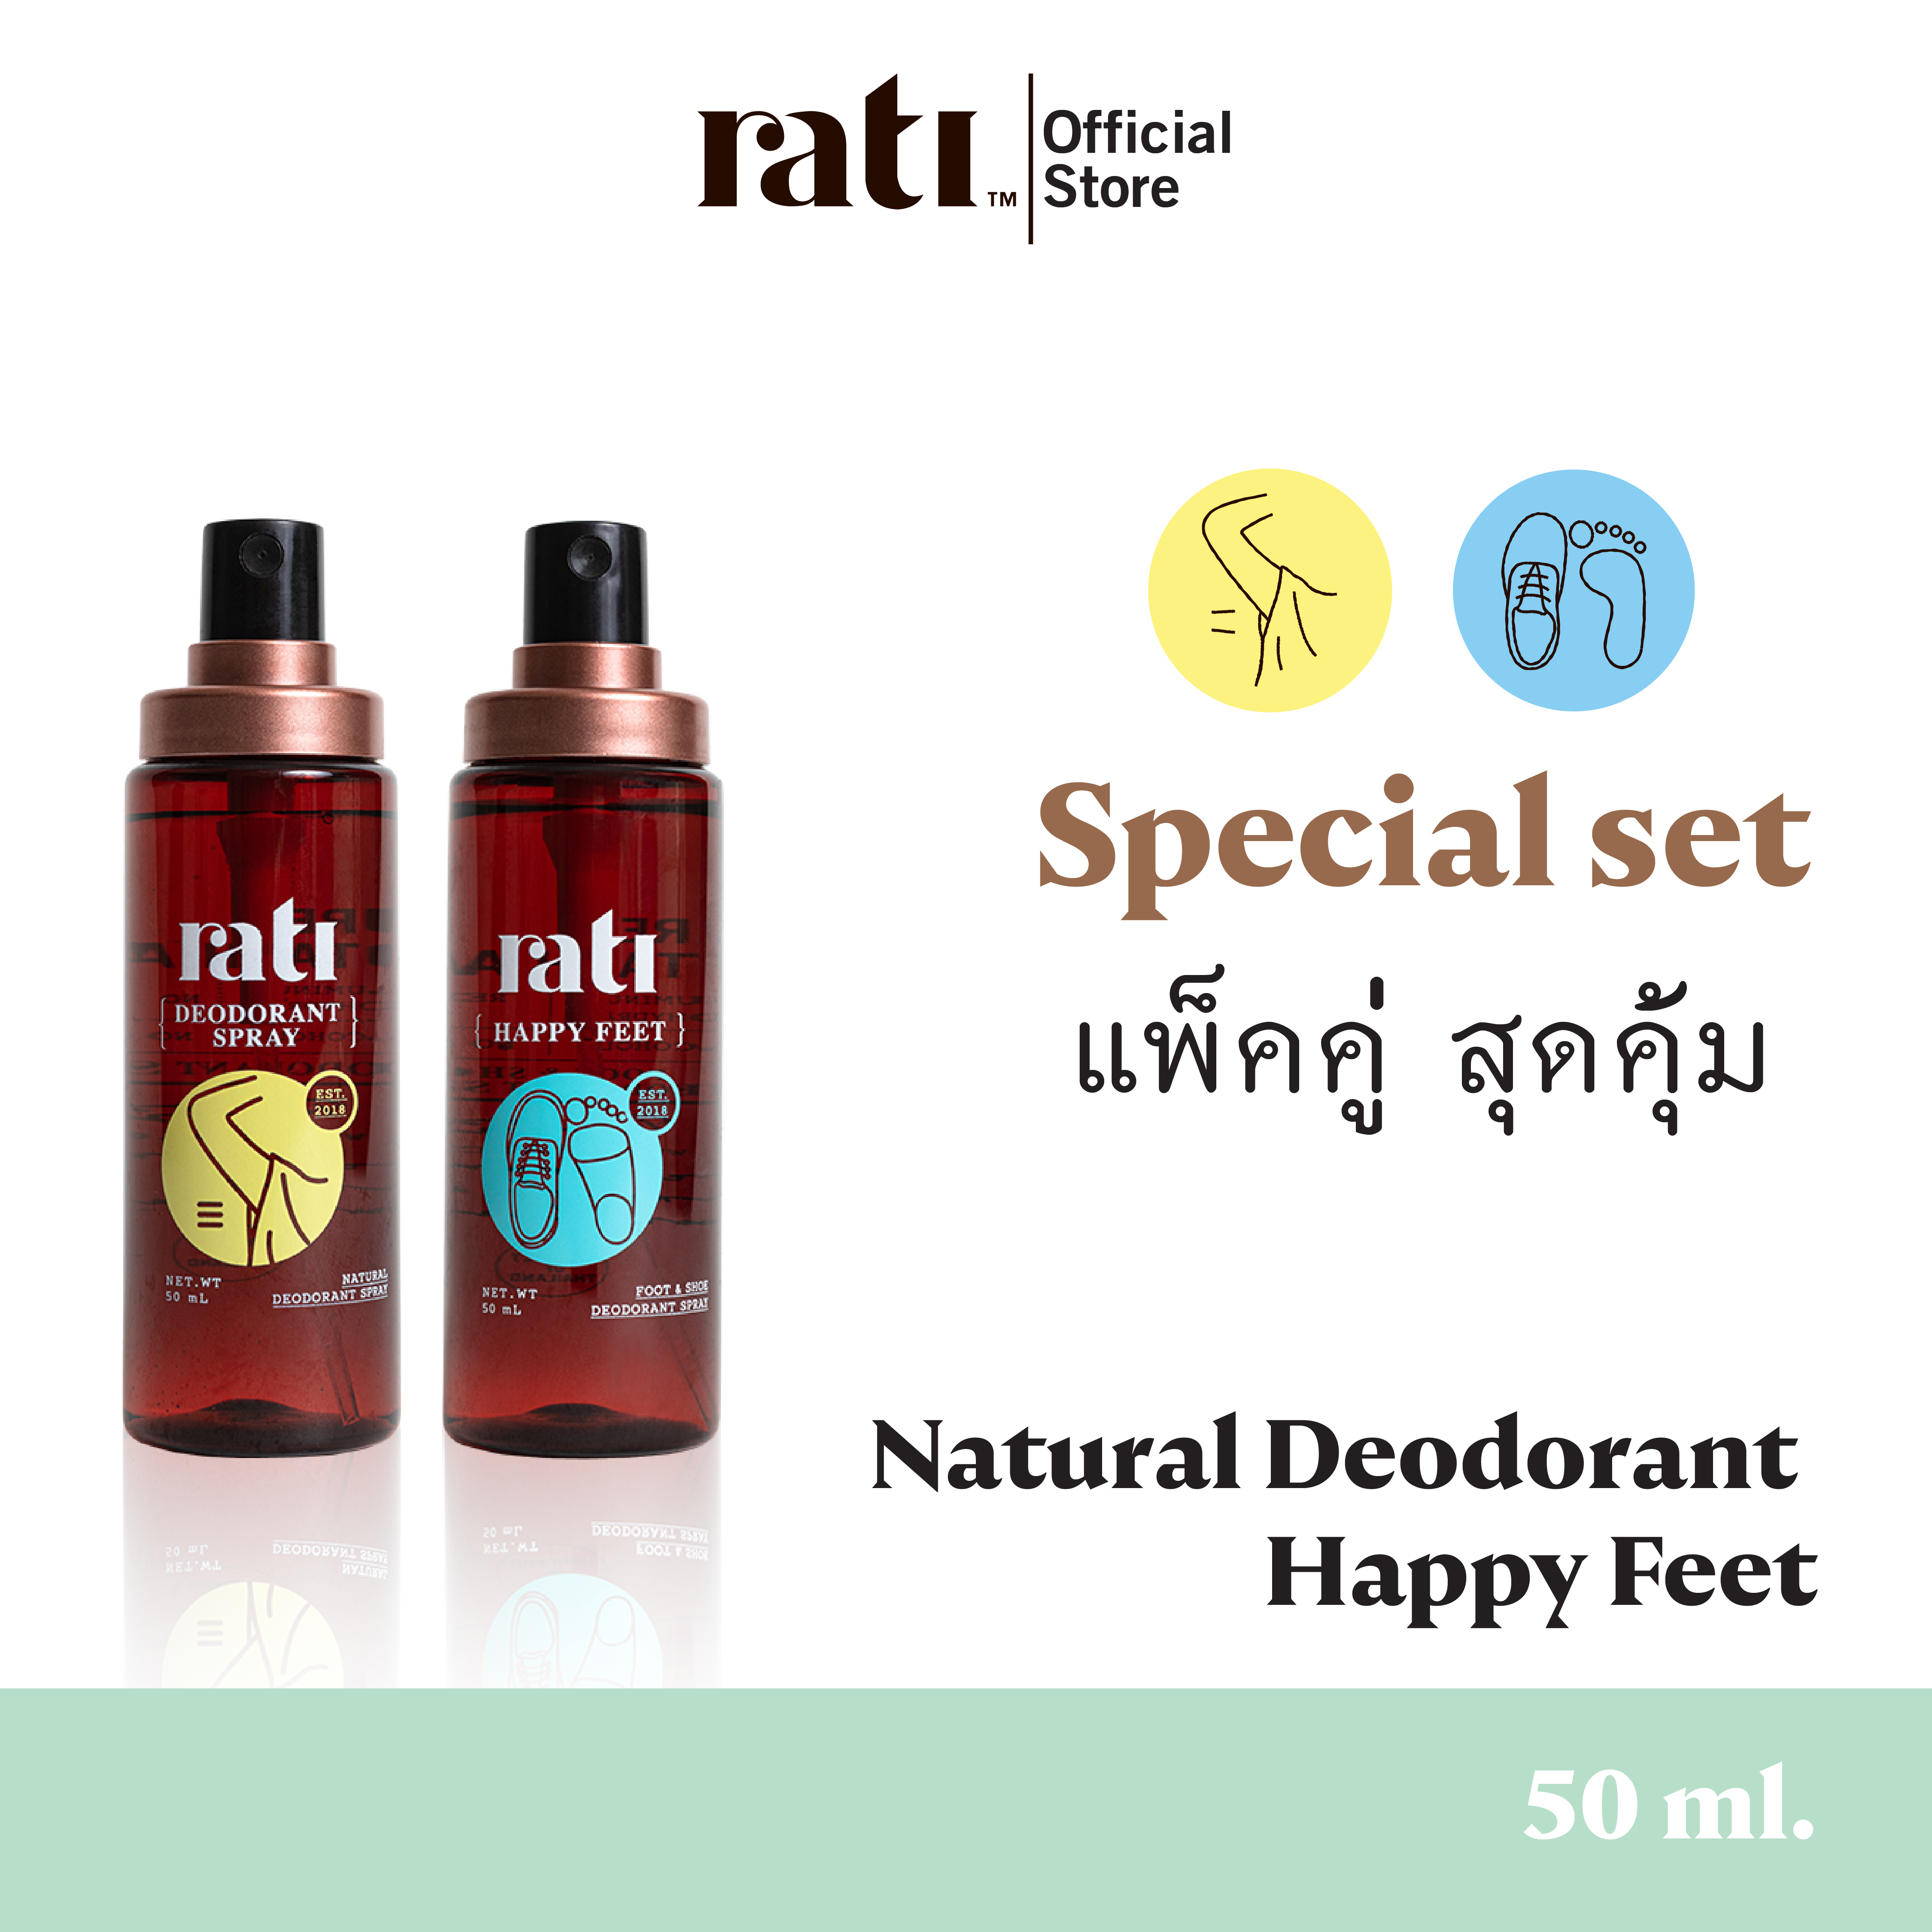 แพ็คคู่ rati Deodorant 50ml. + Happy feet 50 ml.